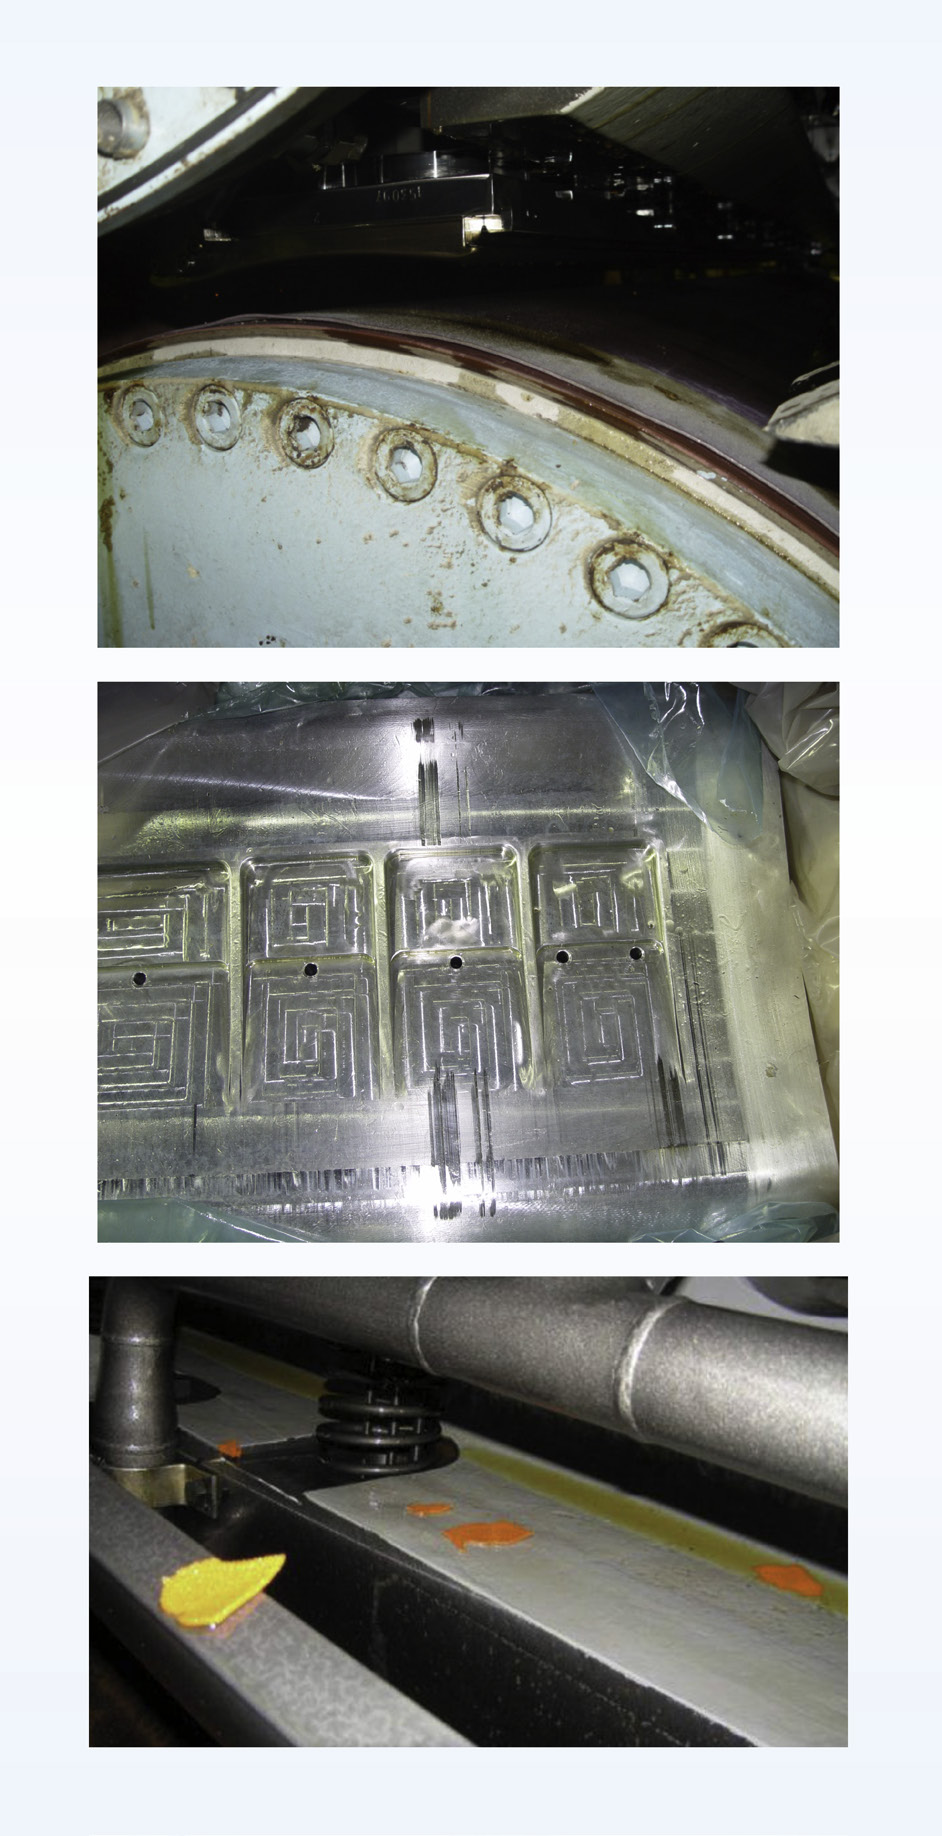 Lafaety Carneiro Coordenador de Produto - Pressing/Belts Fotos 3A, 3B e 3C: Pequenos cortes e/ou marcas na sapata, sujeiras no interior da prensa, bem como imperfeições em sua estrutura podem